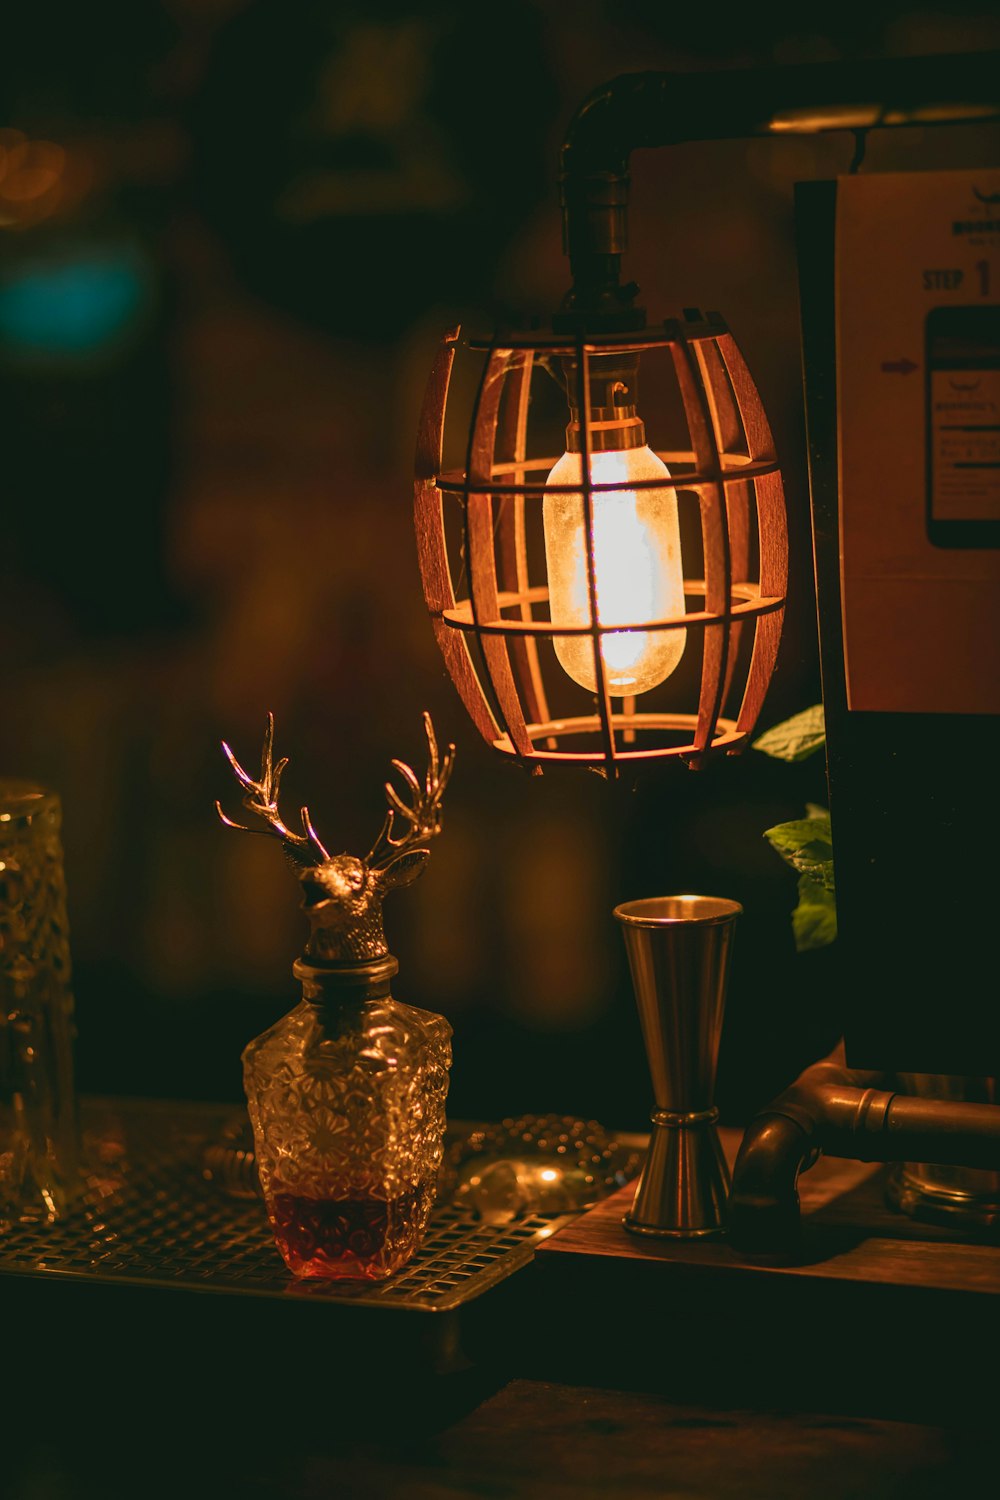 Lampada marrone e nera accesa accanto a un vaso di vetro trasparente